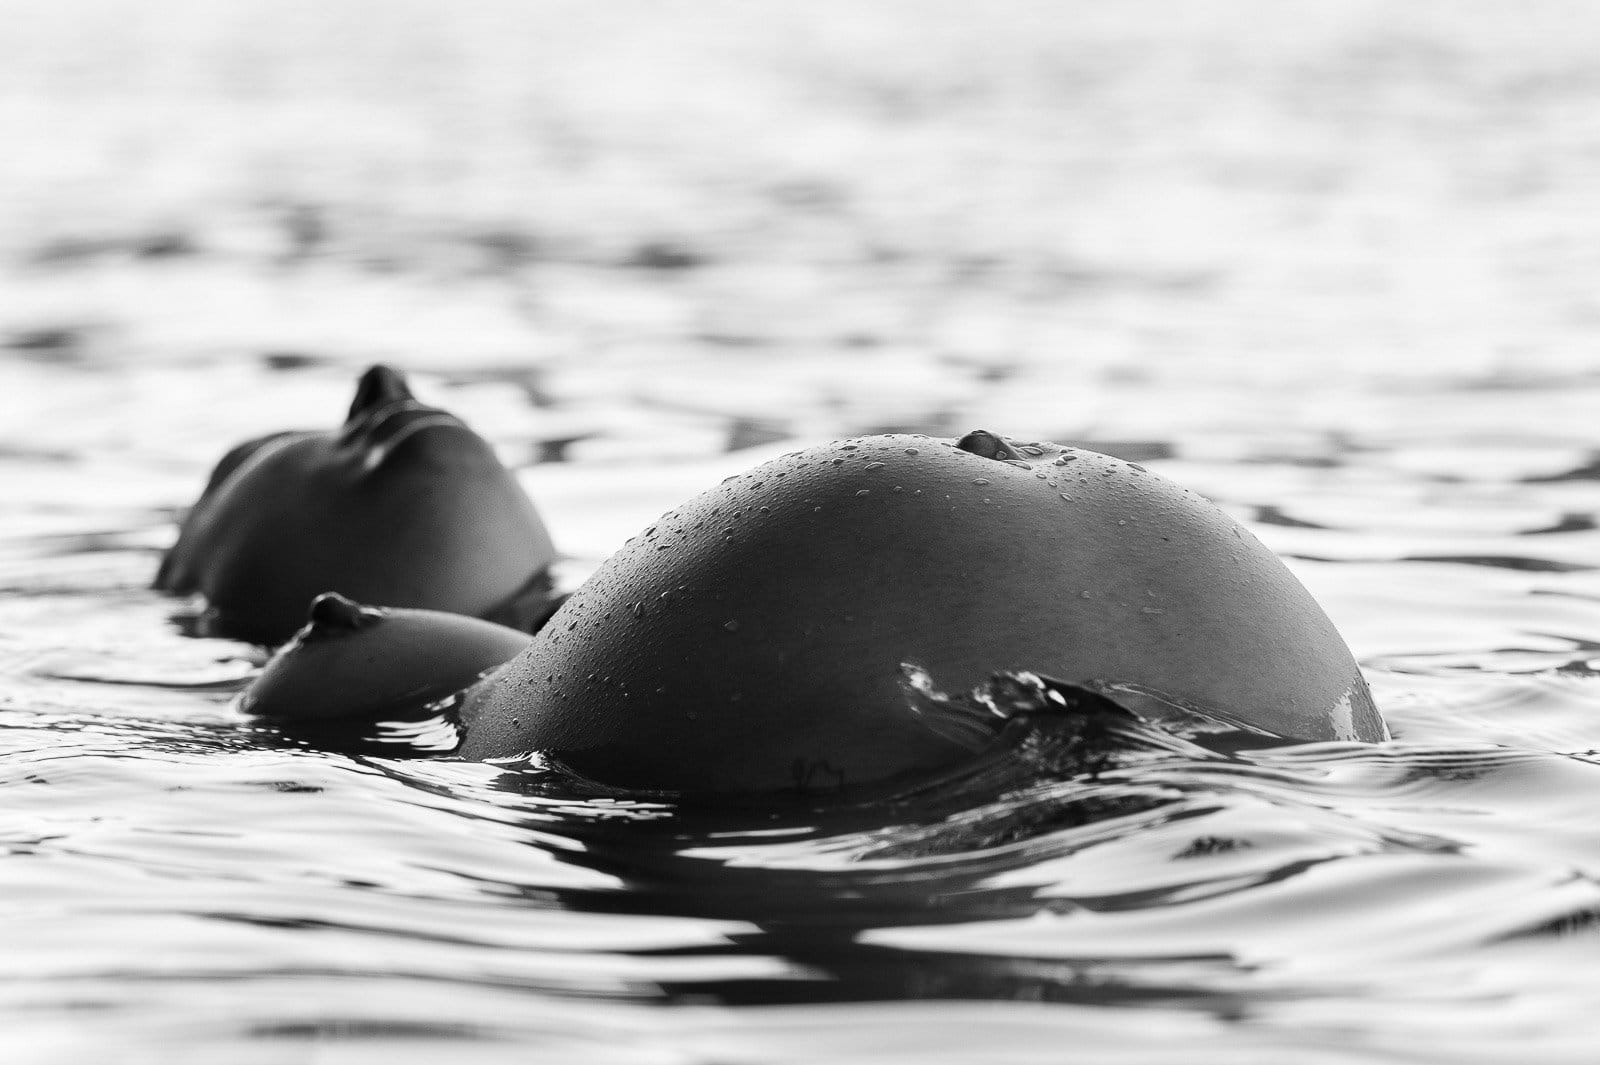 Schwangere liegt im See und hebt ihren Babybauch aus dem Wasser beim Babybauch Shooting in Hamburg draußen in der Natur